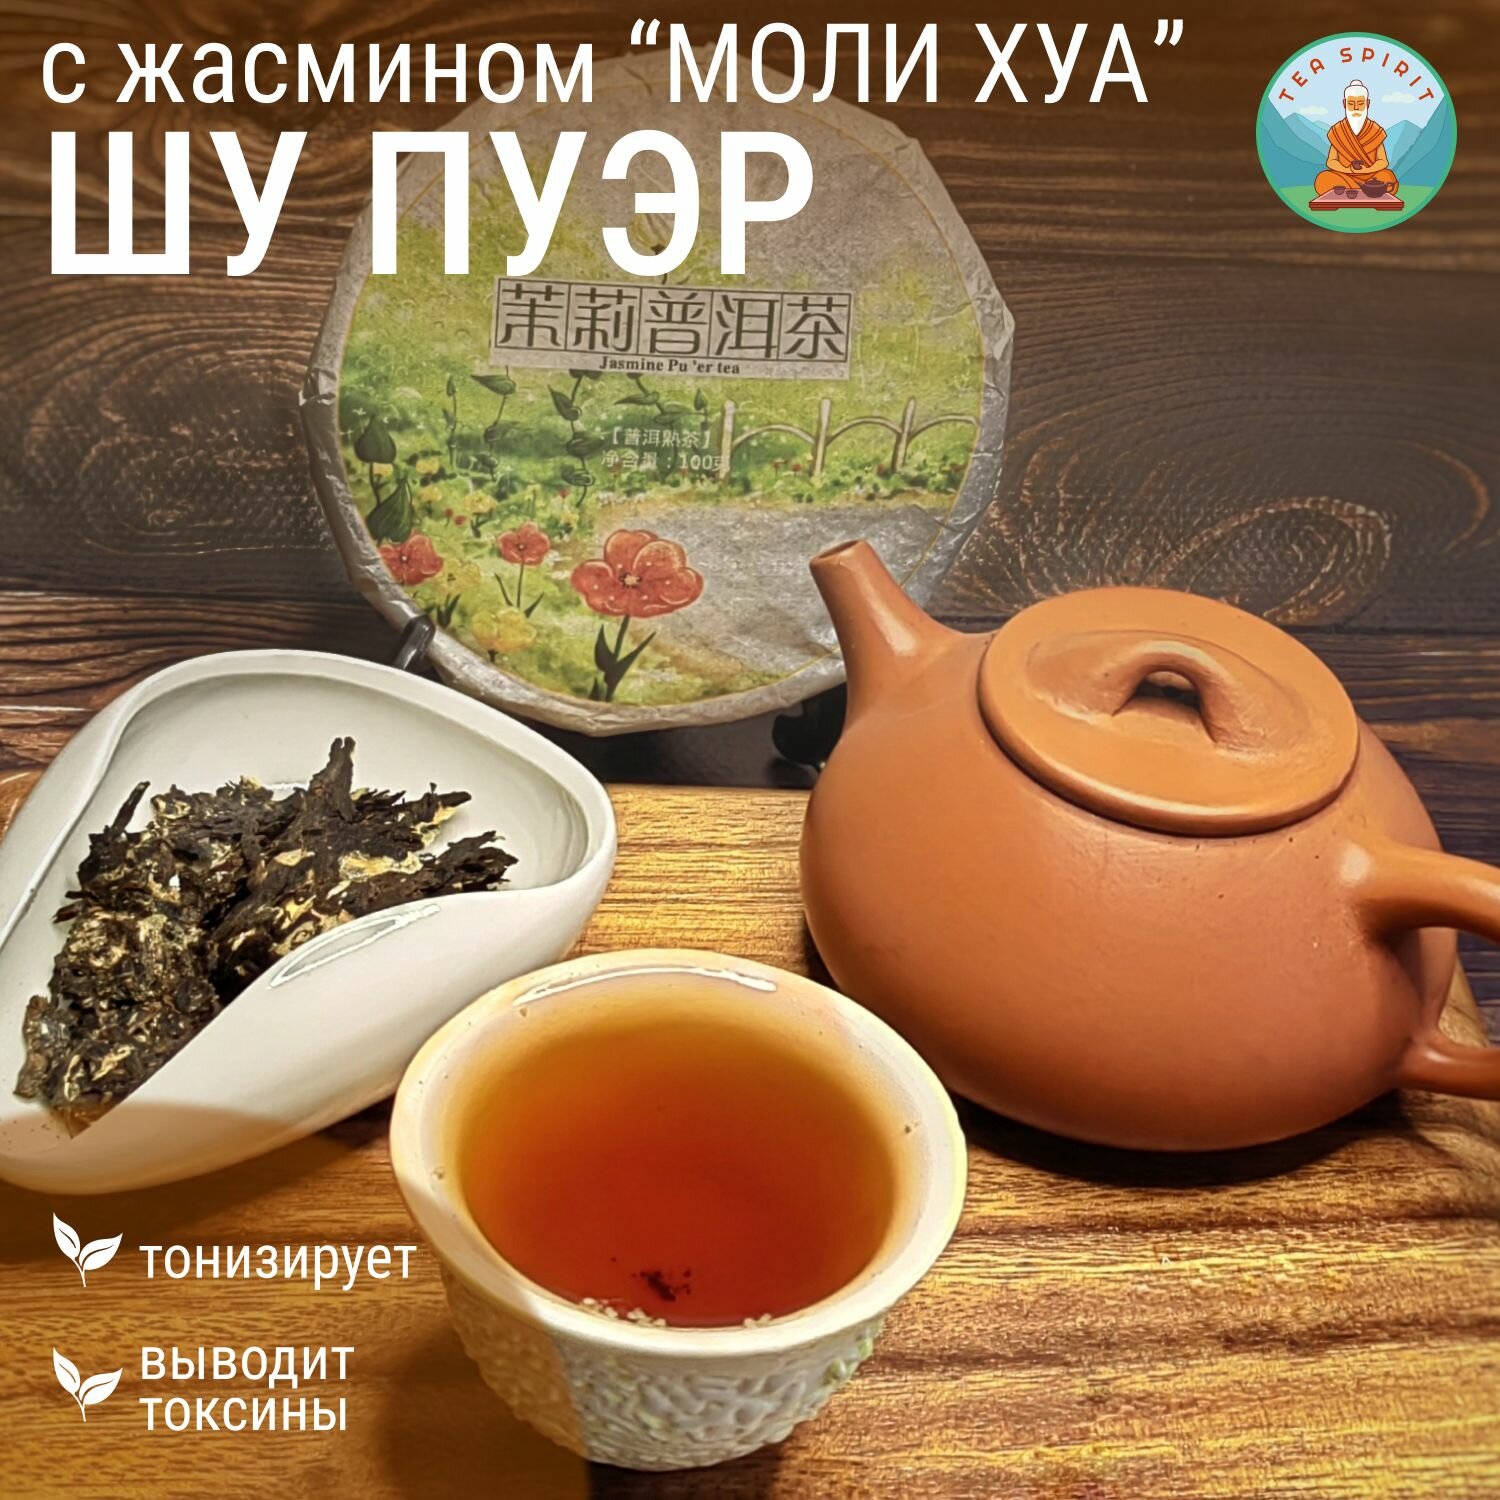 Шу Пуэр с жасмином "Моли Хуа" / Листовой чай, черный чай, блин 100 гр.